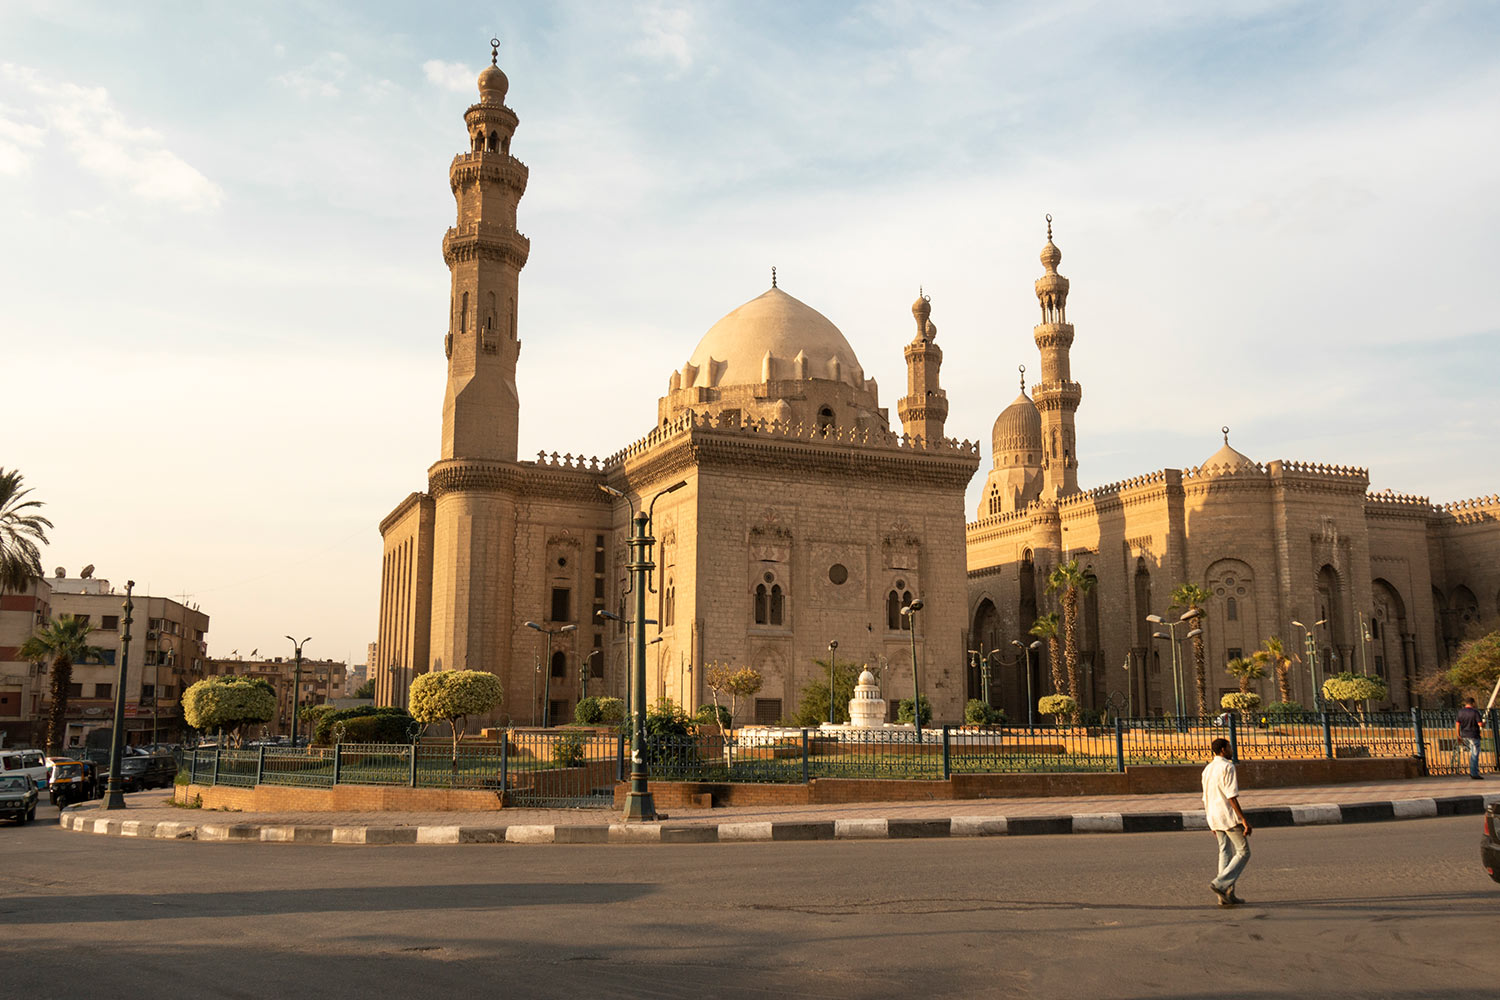 Mosquée Sultan Hassan, Le Caire, Égypte / Sultan Hassan Mosque, Cairo, Egypt